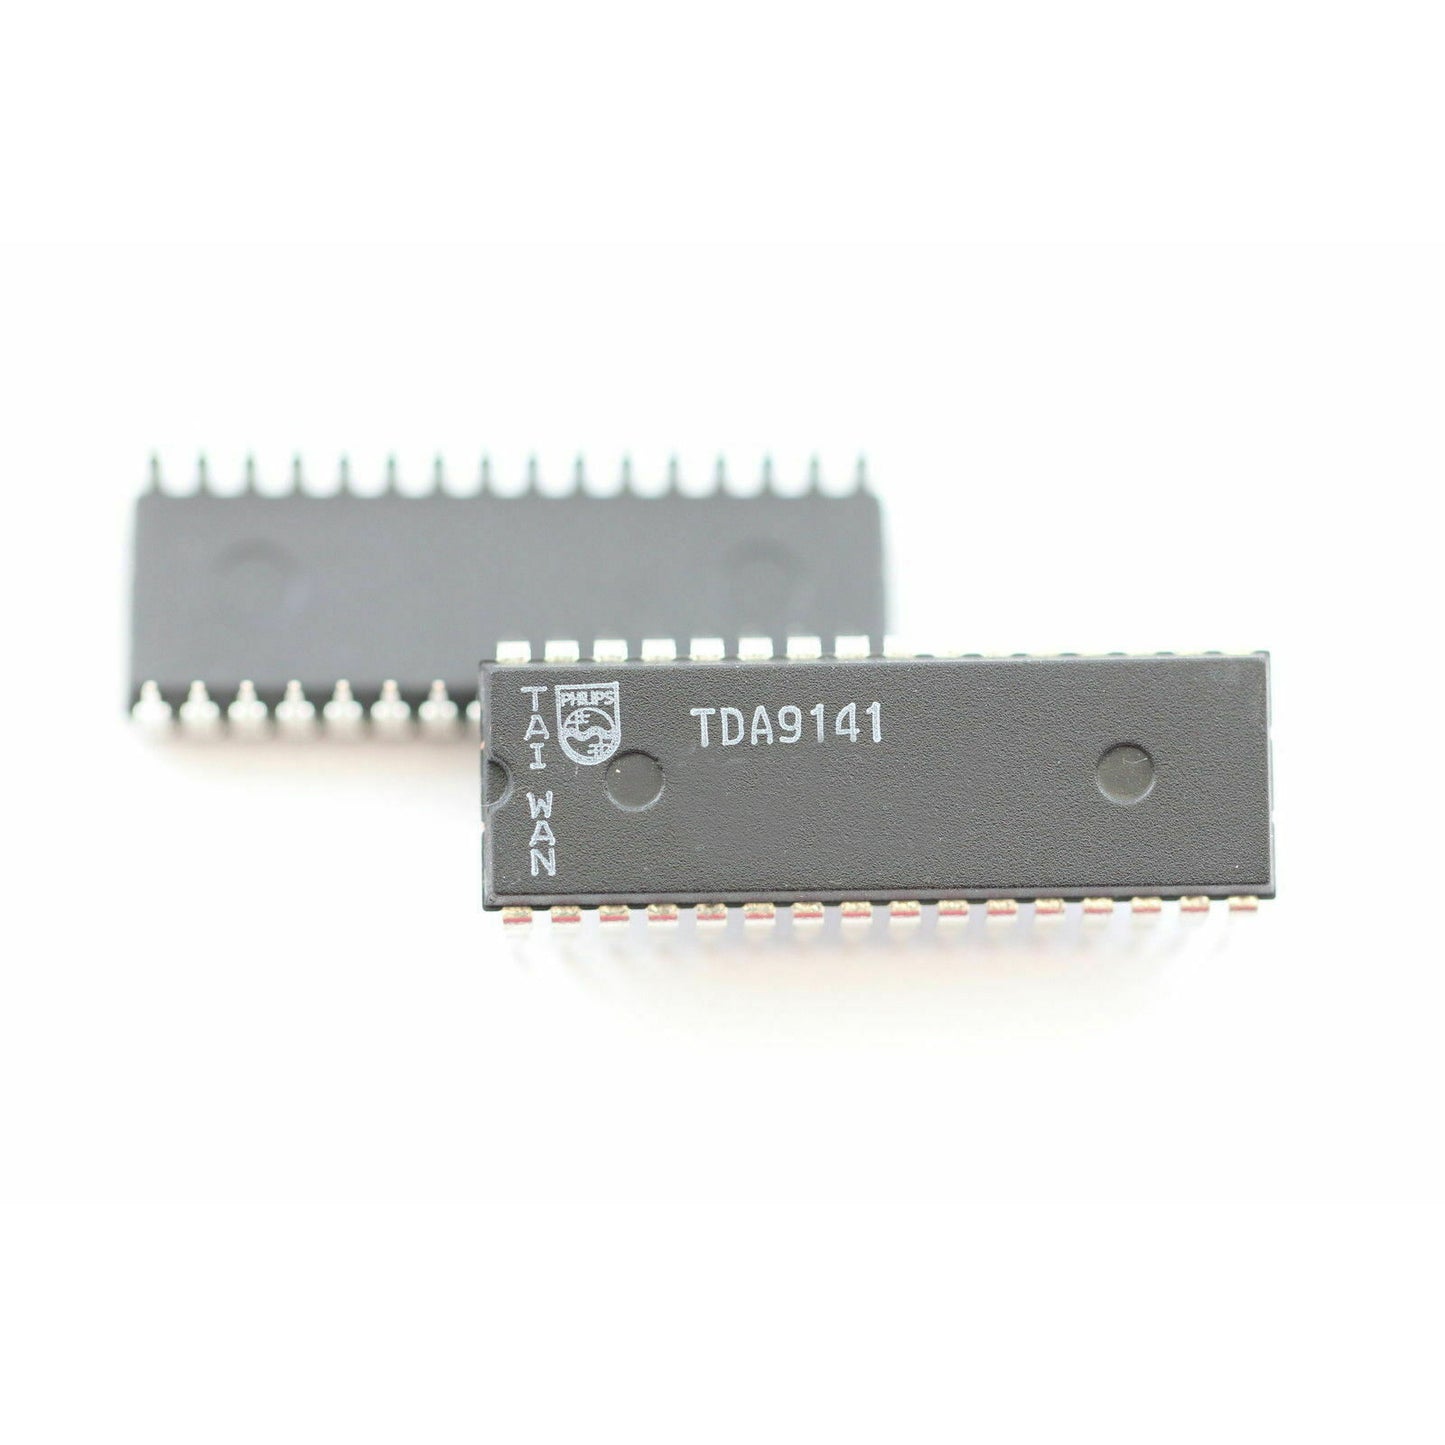 PHILIPS TDA9141 componente elettronico, circuito integrato, 32 contatti